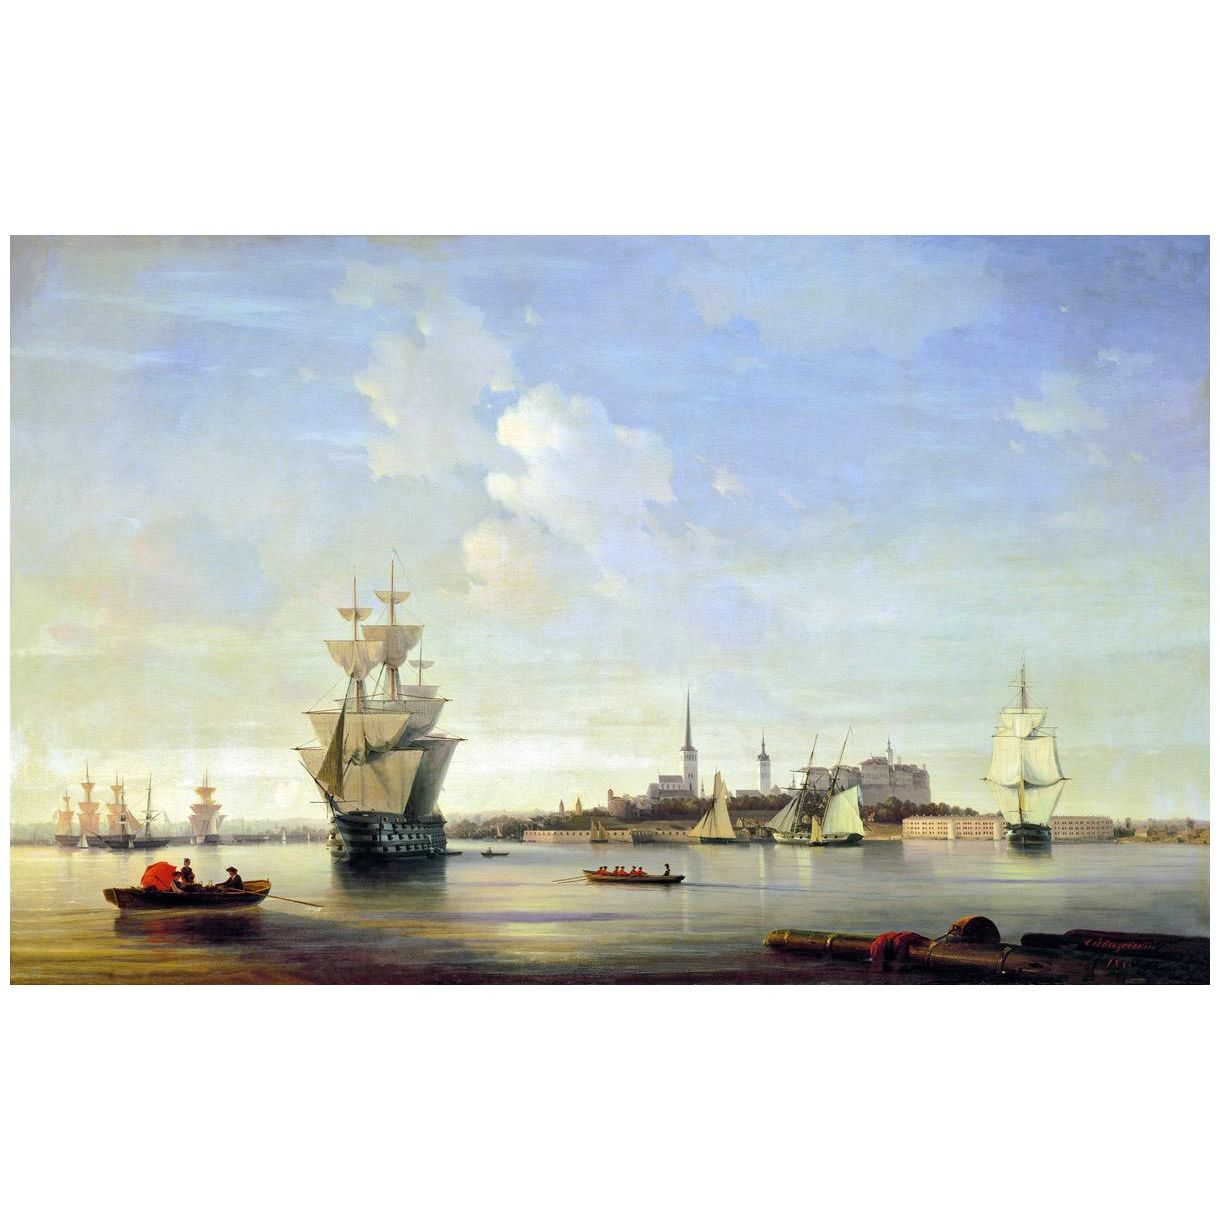 Иван Айвазовский. Ревель. 1844. Военно-морской музей, С-Петербург